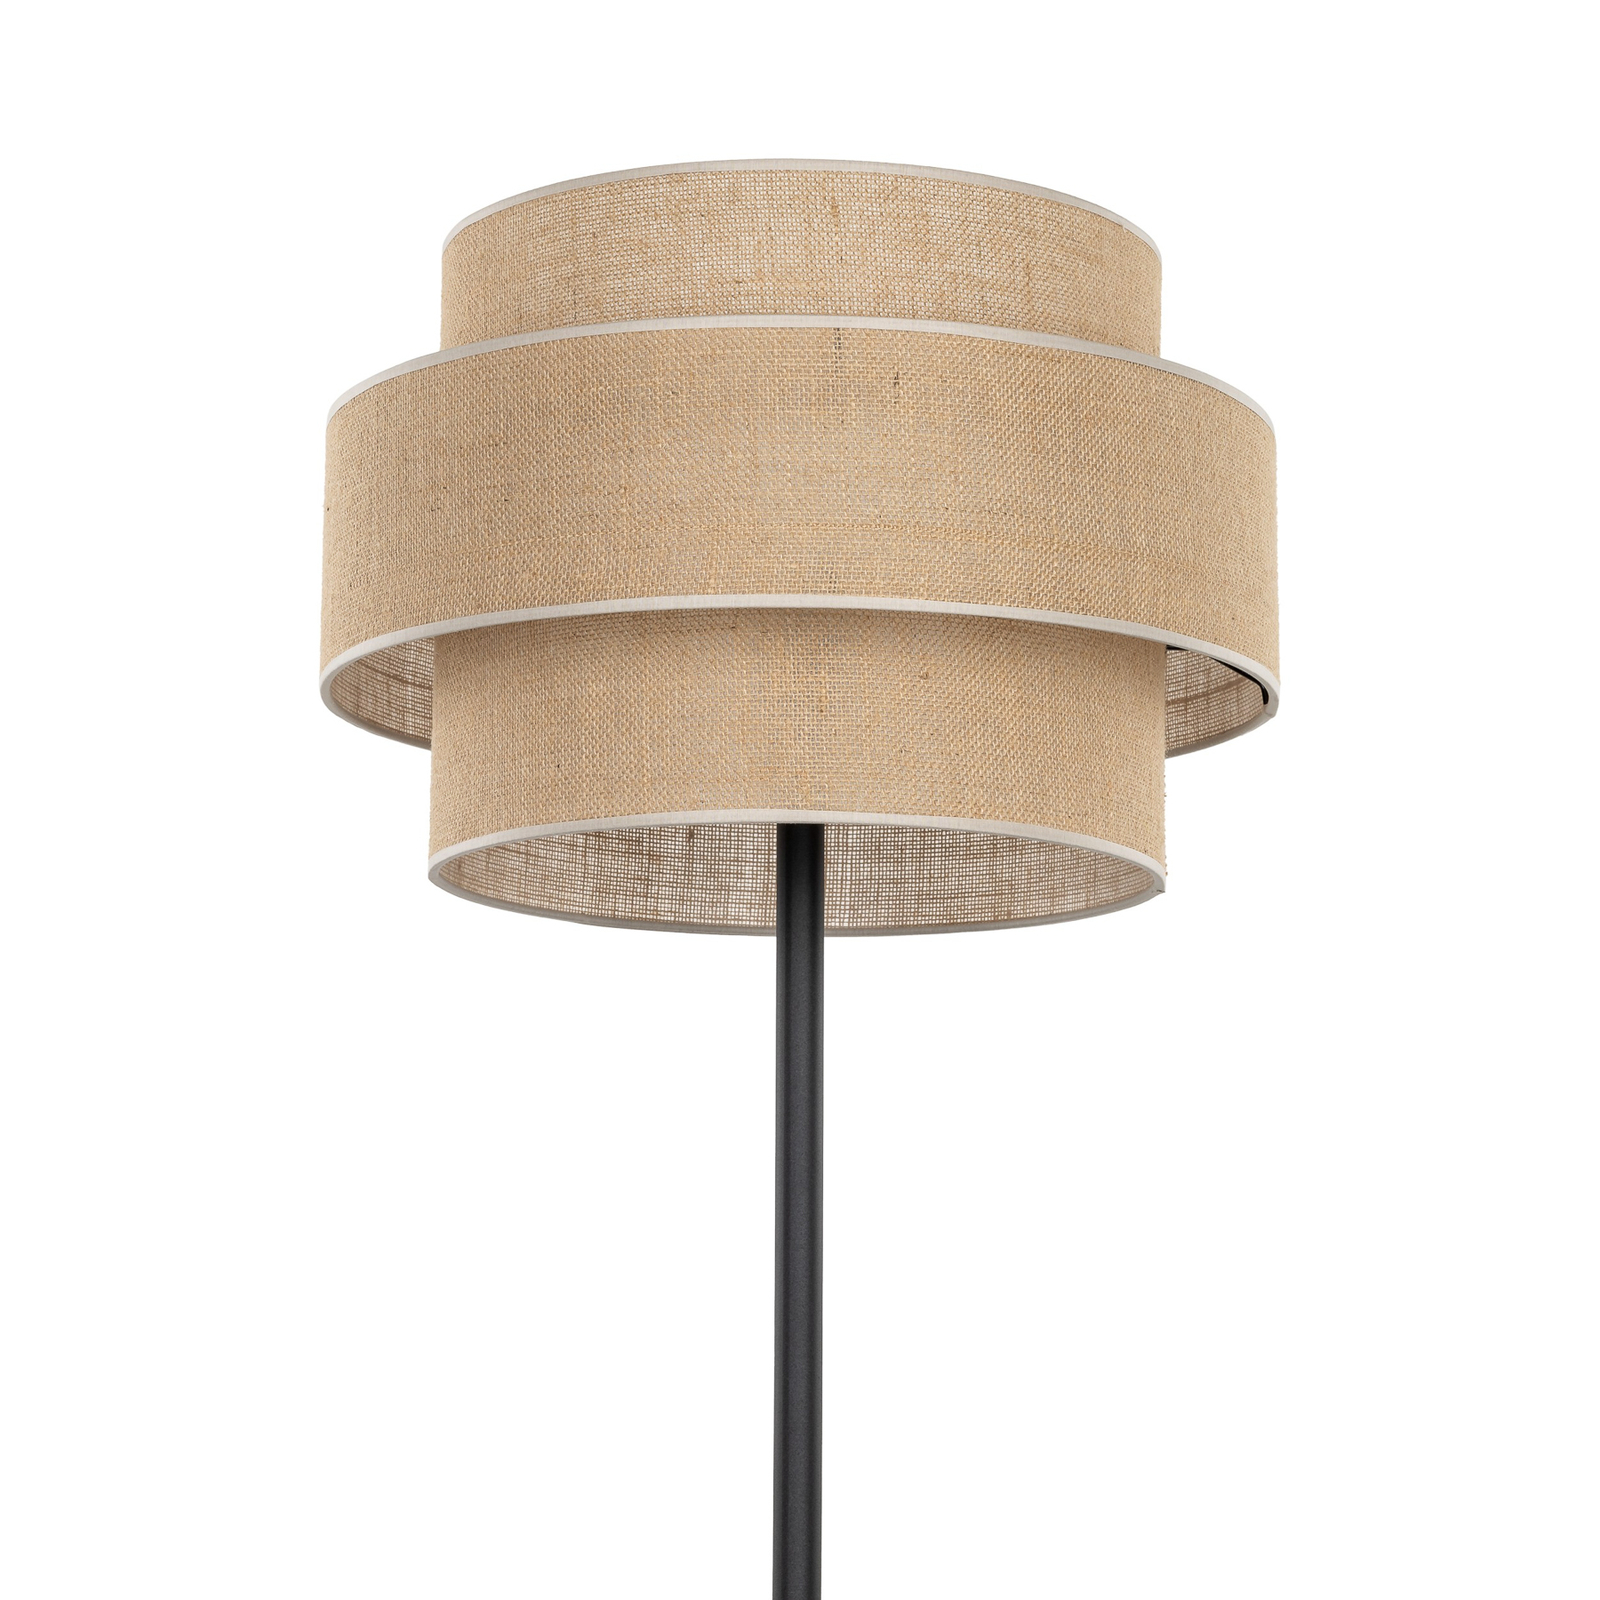 Lampe sur pied Calisto, jute, cylindre, brun naturel, hauteur 155 cm